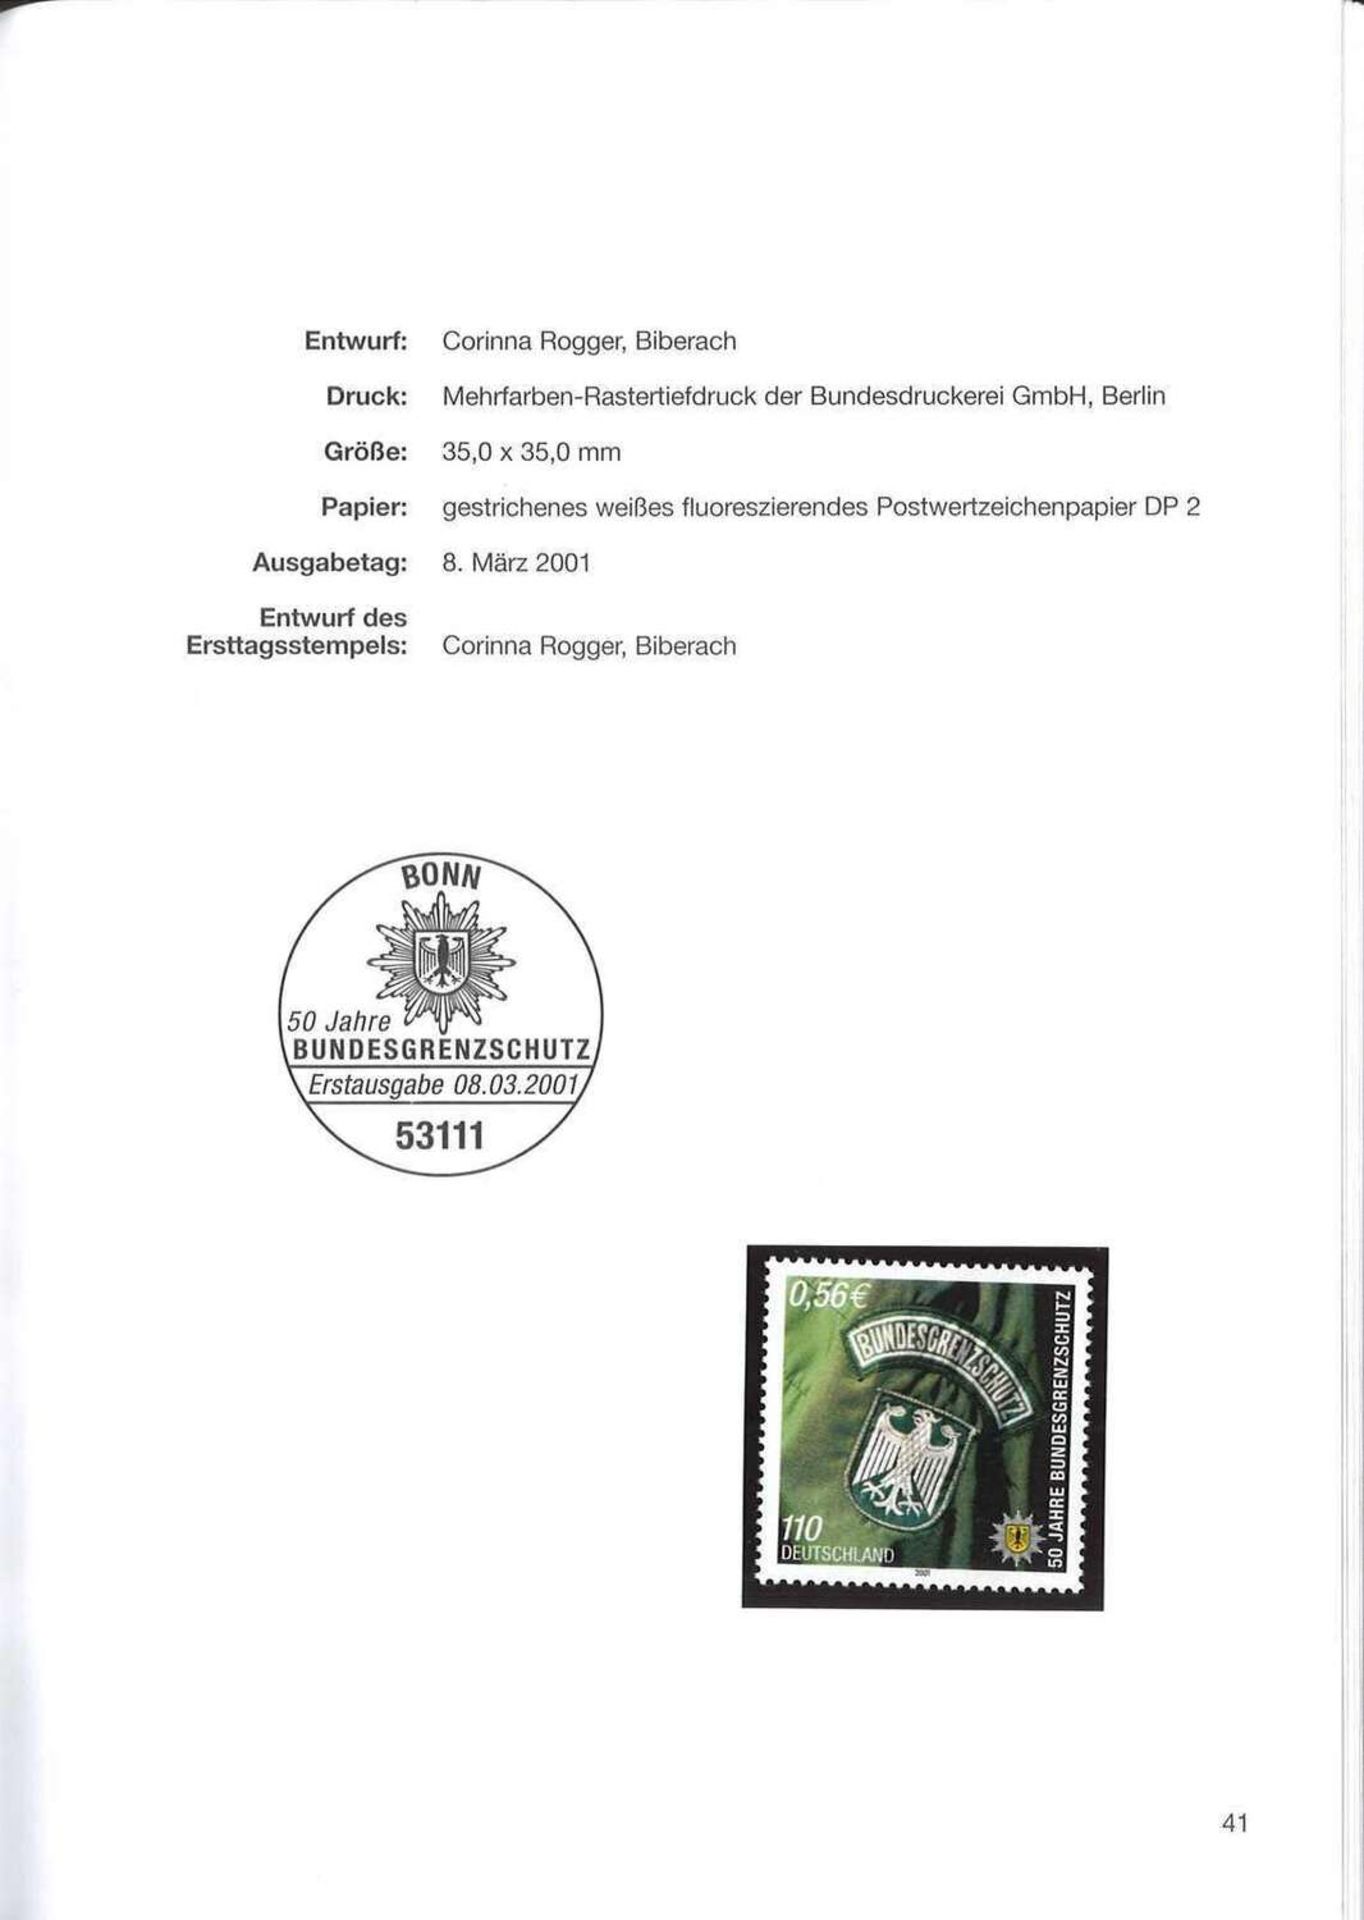 Die Postwertzeichen der BRD 2001 im Schuber. Marken postfrisch Frankaturware neu. Top Zustand. The - Image 3 of 4